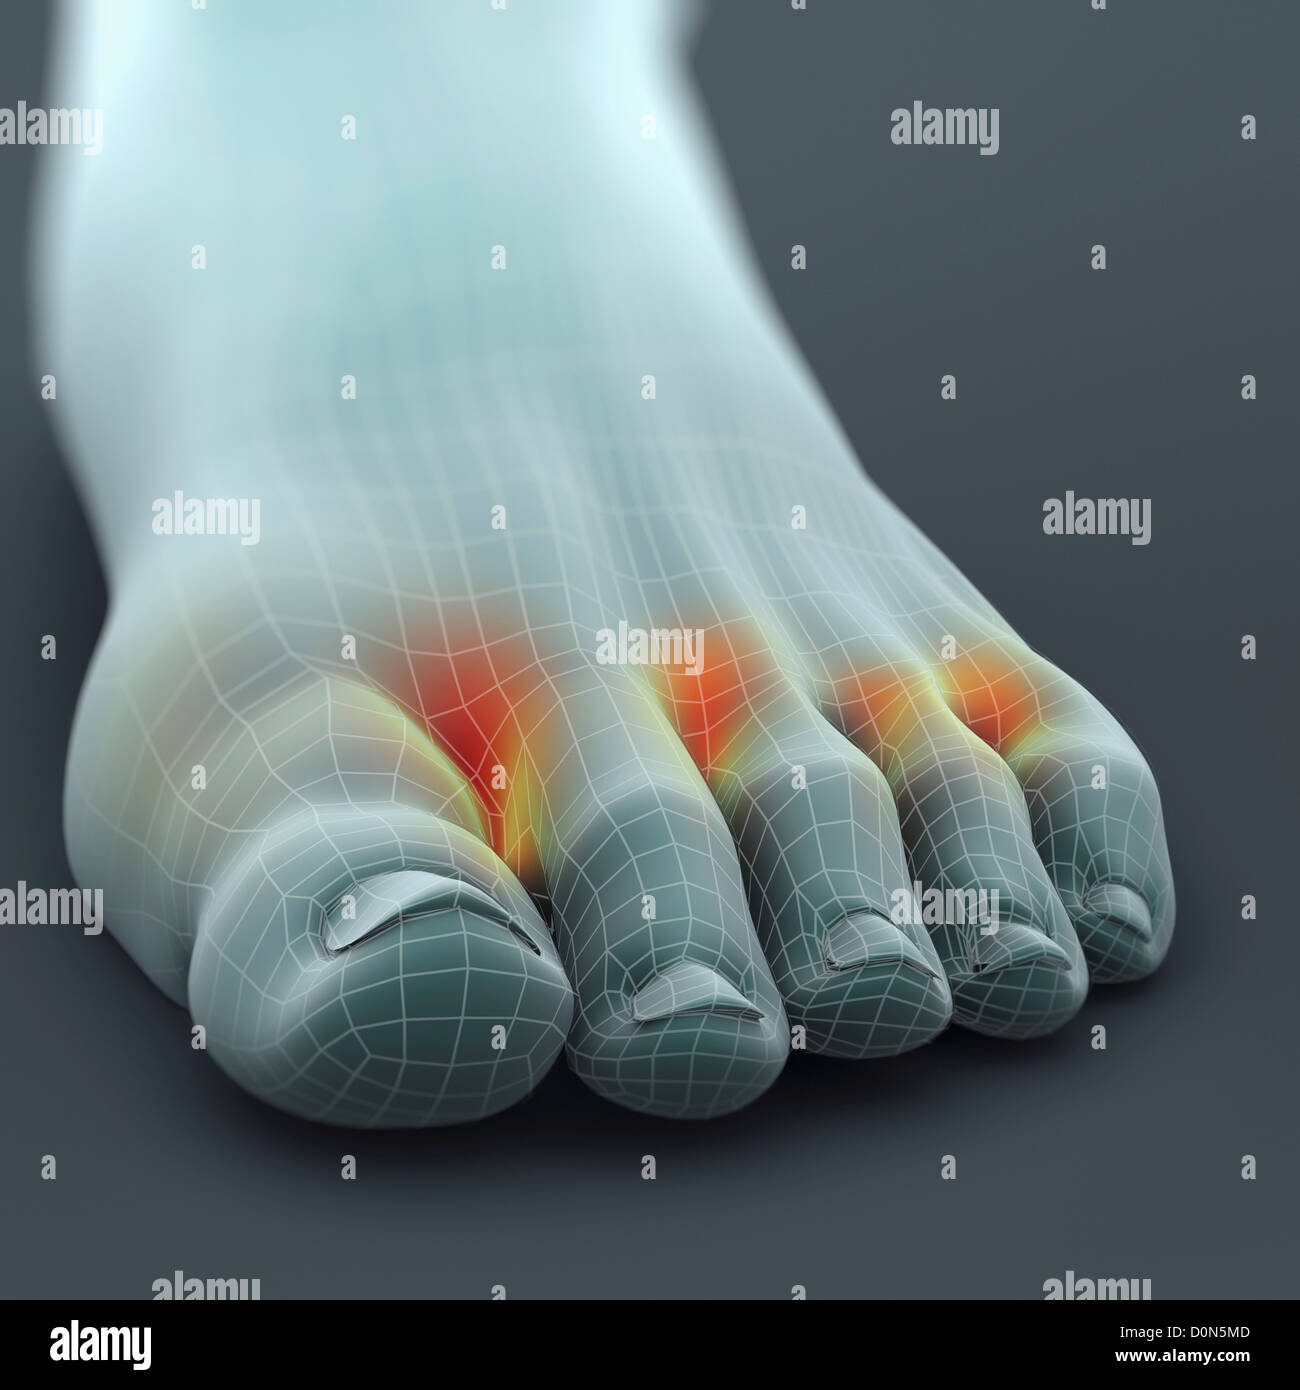 Ein linker Fuß Wireframe aussehen. Fuß ist hervorgehobenen Stellen Präsenz Pilzinfektion Fußpilz genannt. Stockfoto